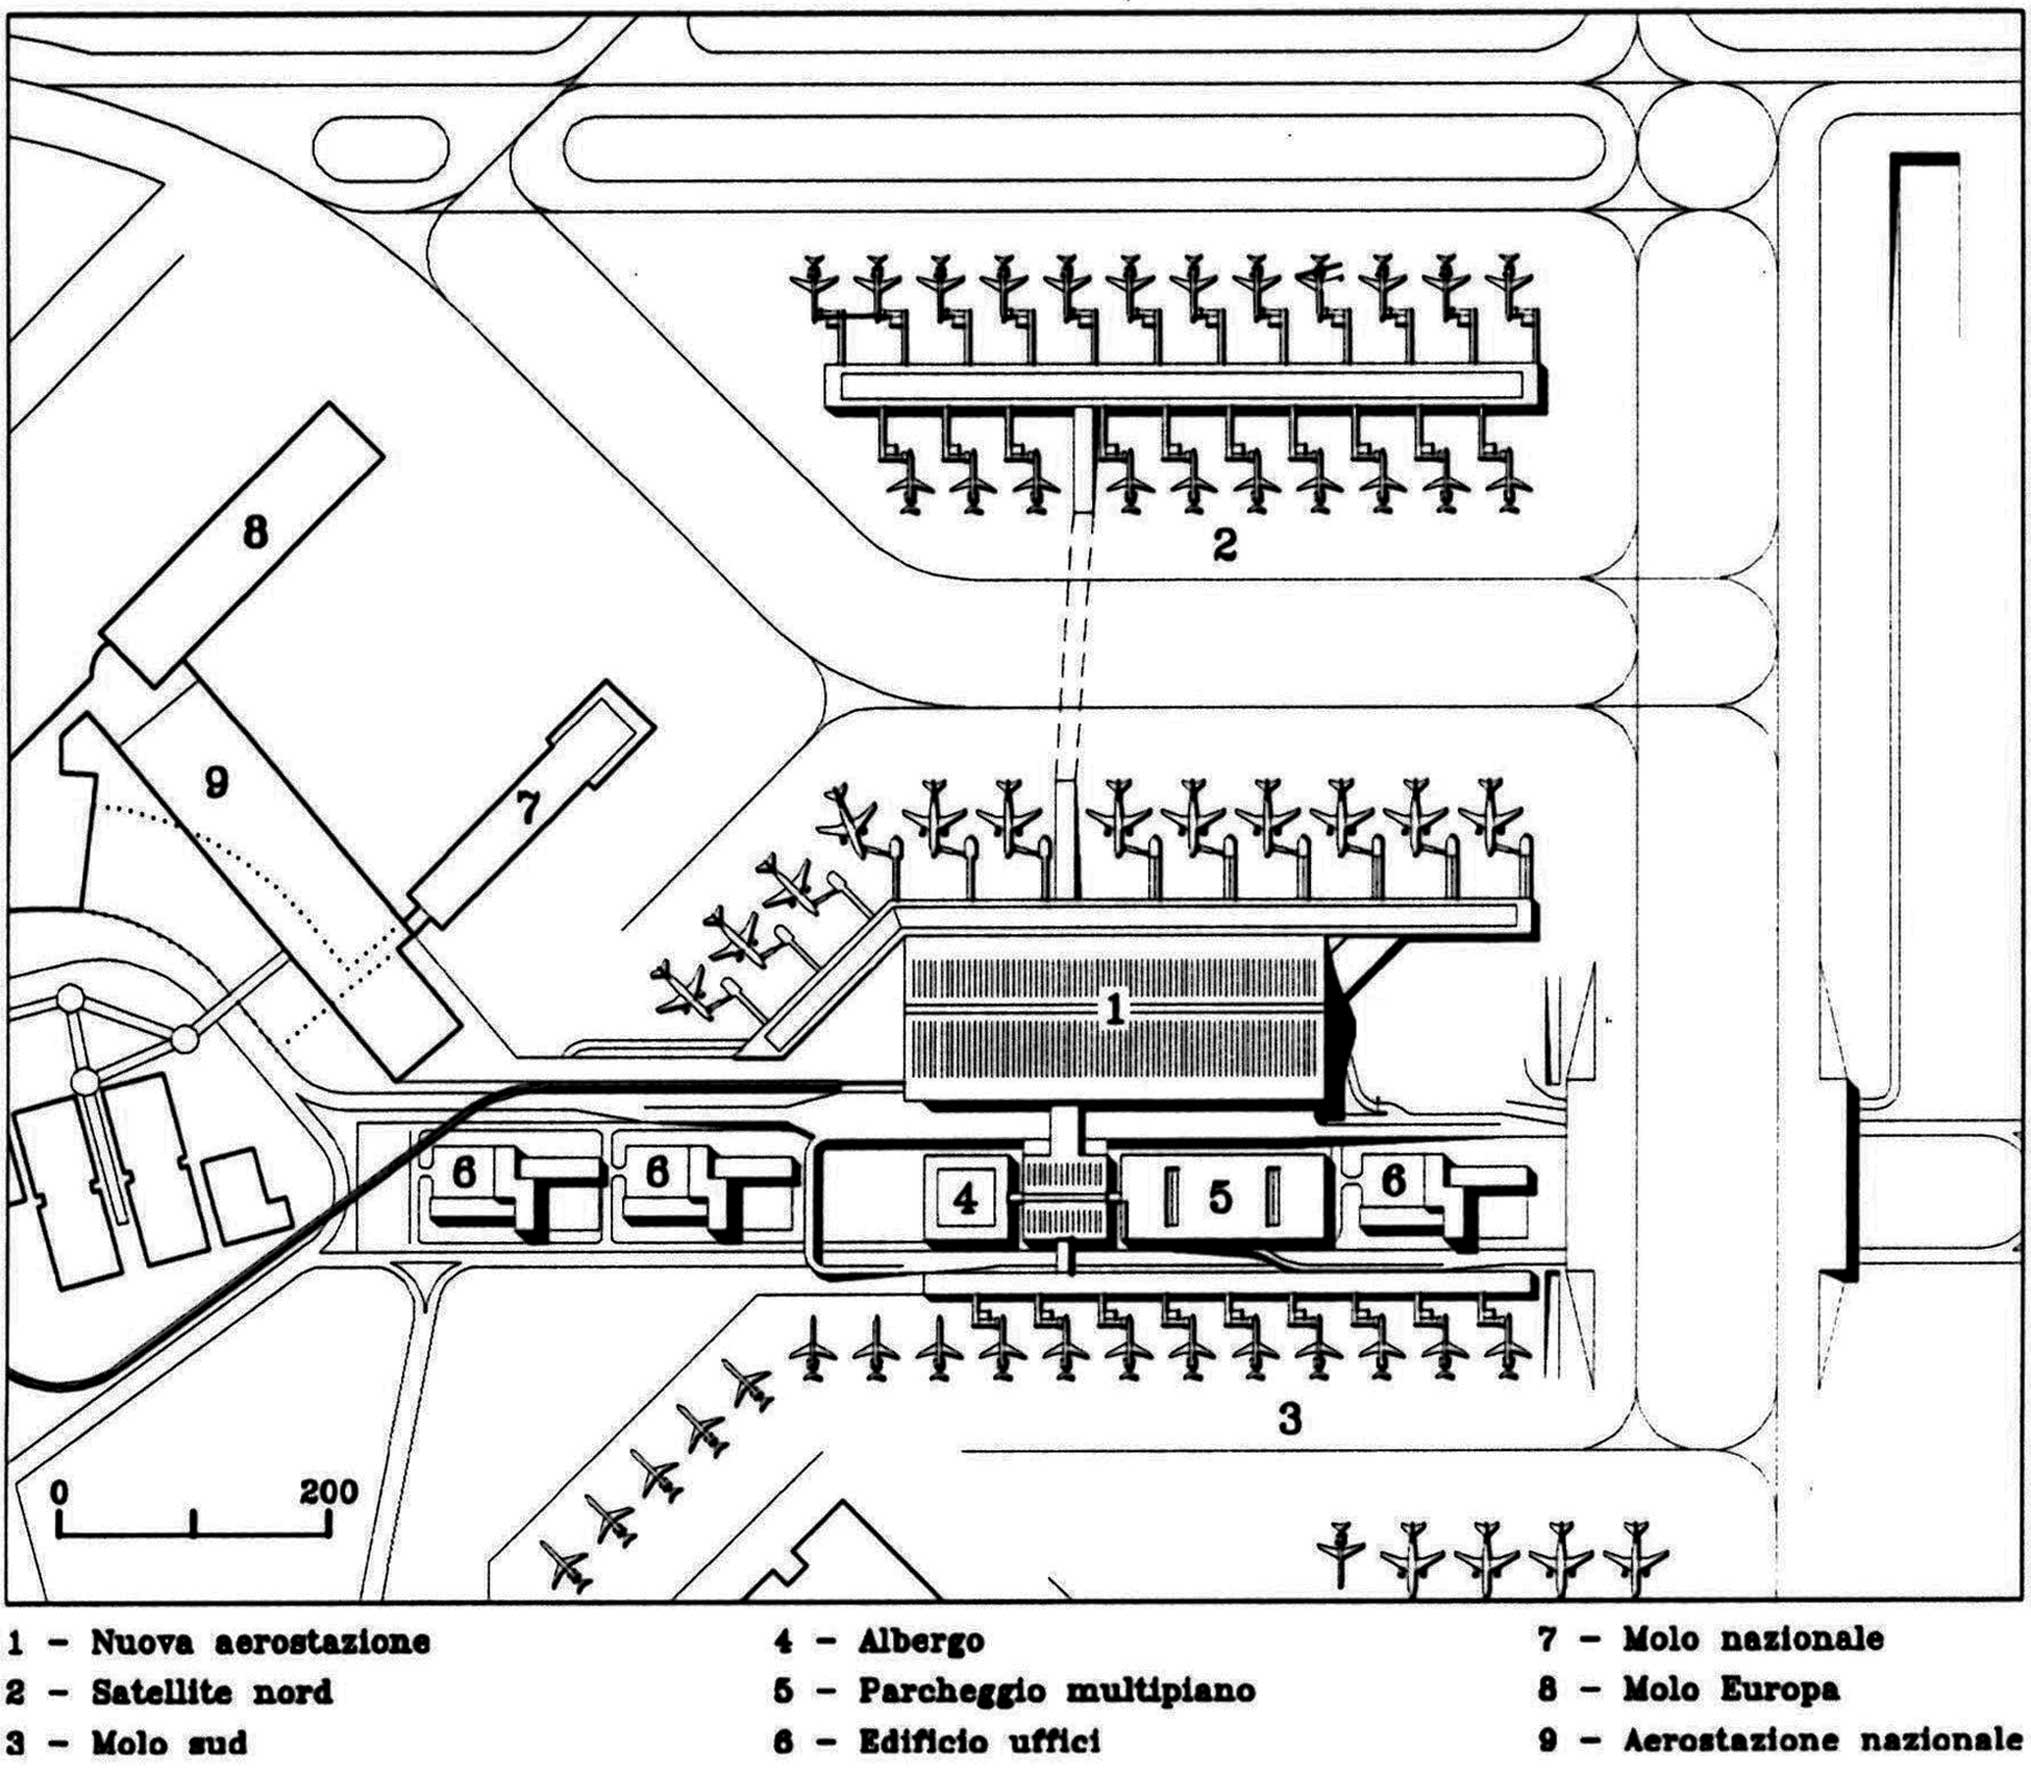 22 - Proposta per una nuova aerostazione Alitalia nell’area centrale e merci dell’Aeroporto “L. Da Vinci”, Fiumicino (RM) - Stralcio planimetrico